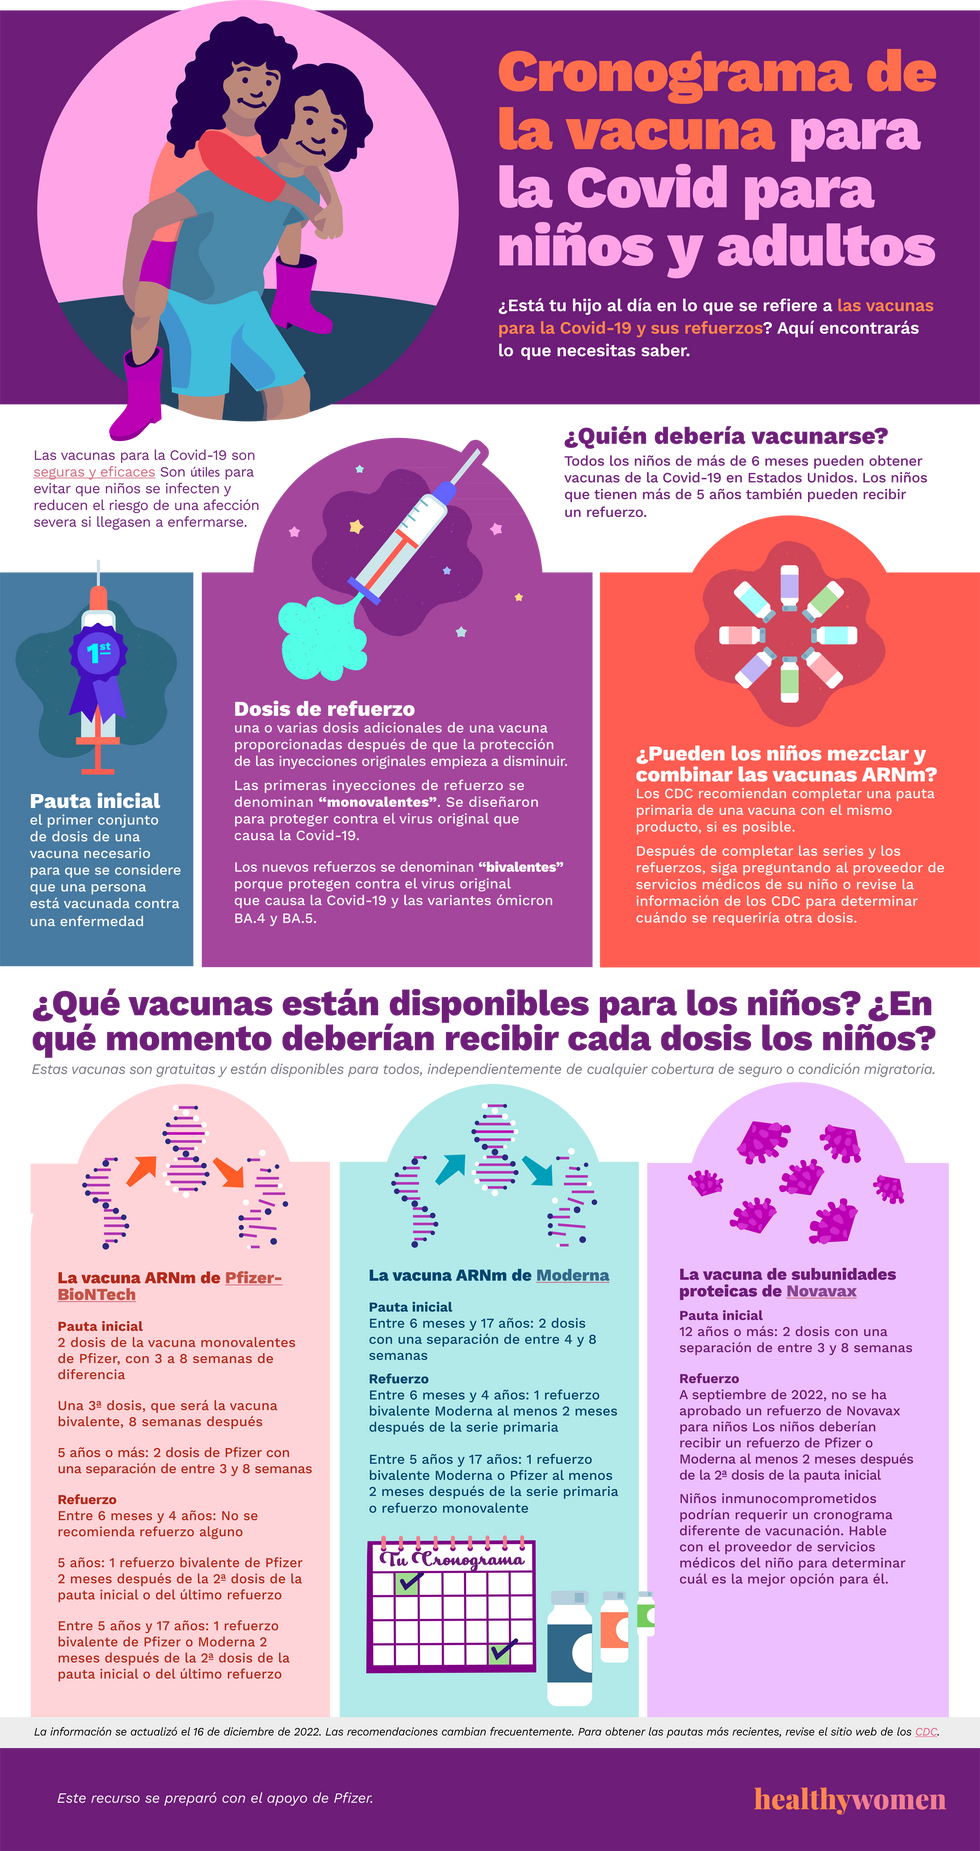 Infographic Cronograma de la vacuna para la Covid para ni\u00f1os y adultos. Click the image to open the PDF